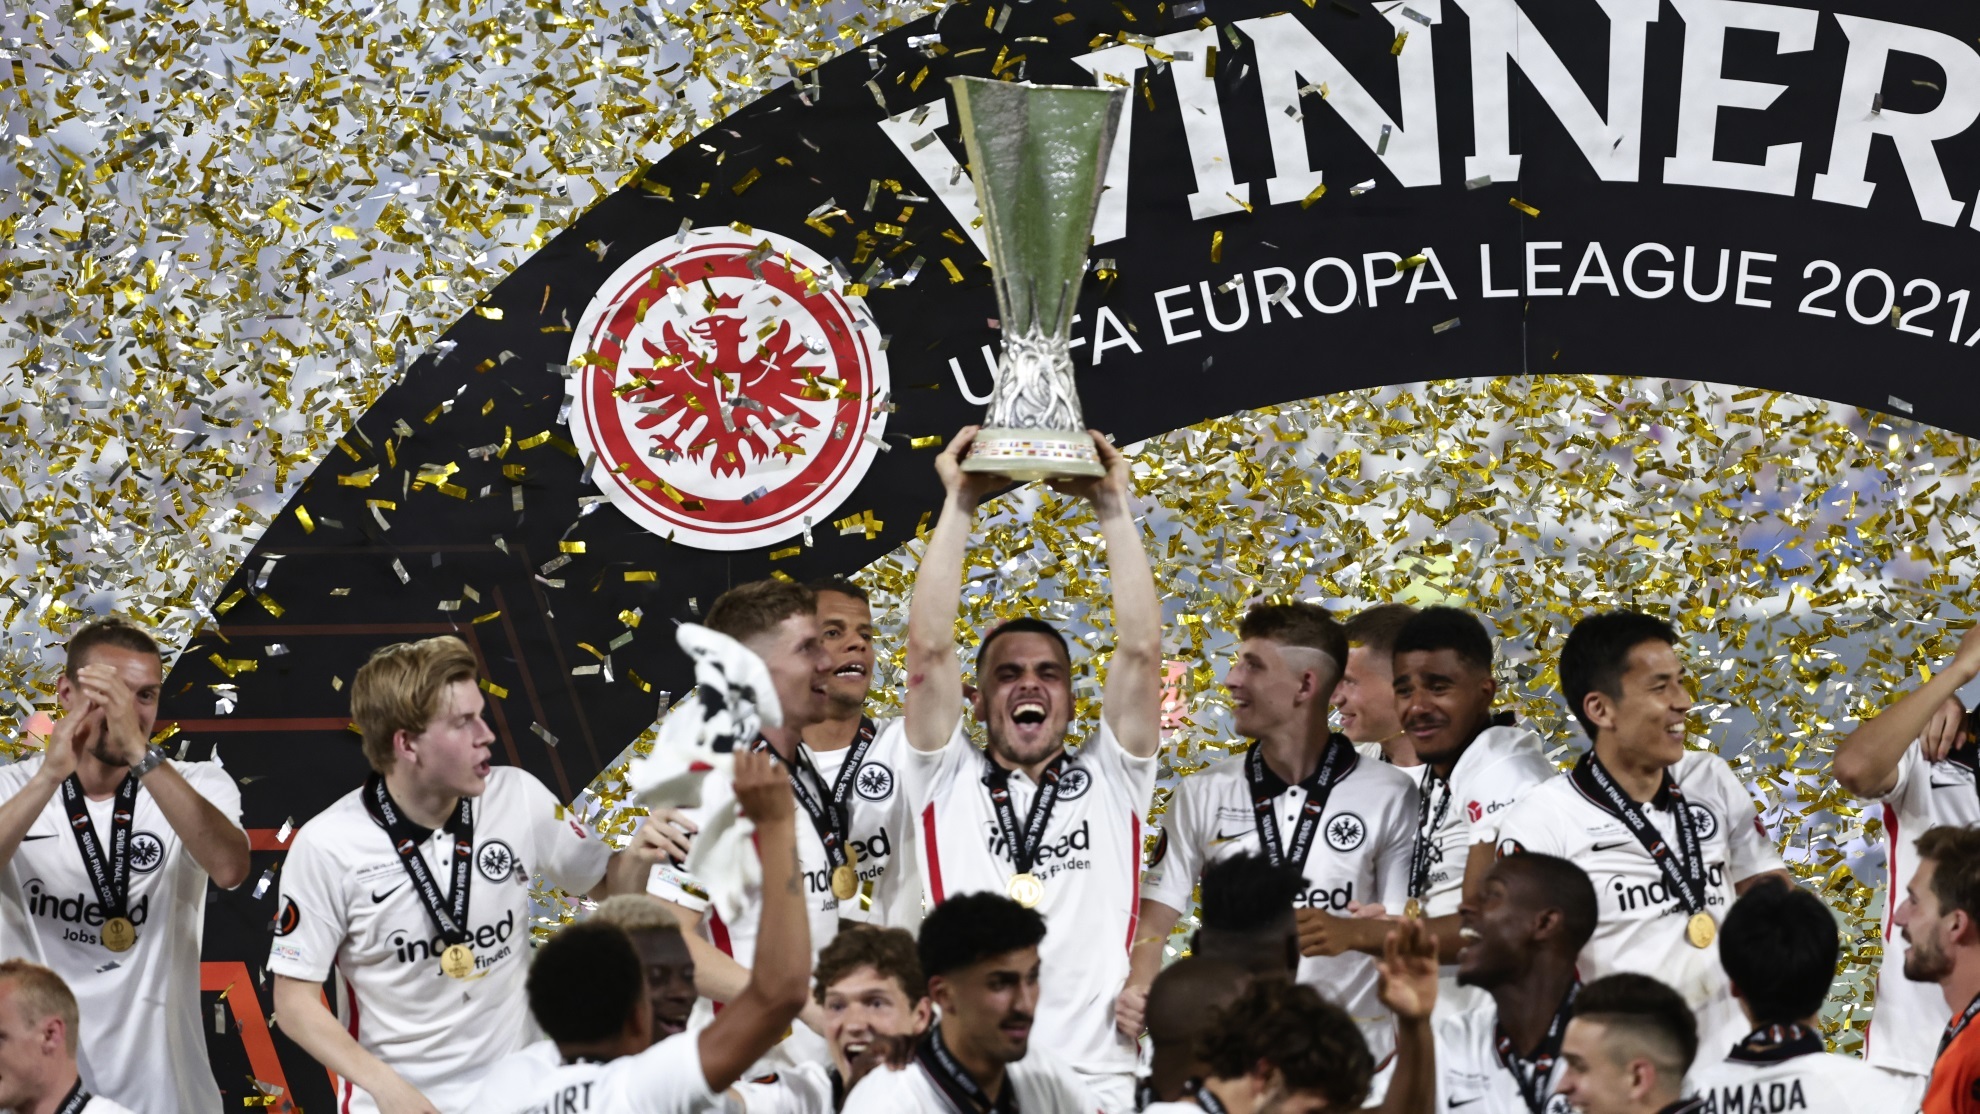 Ganador europa league 2022